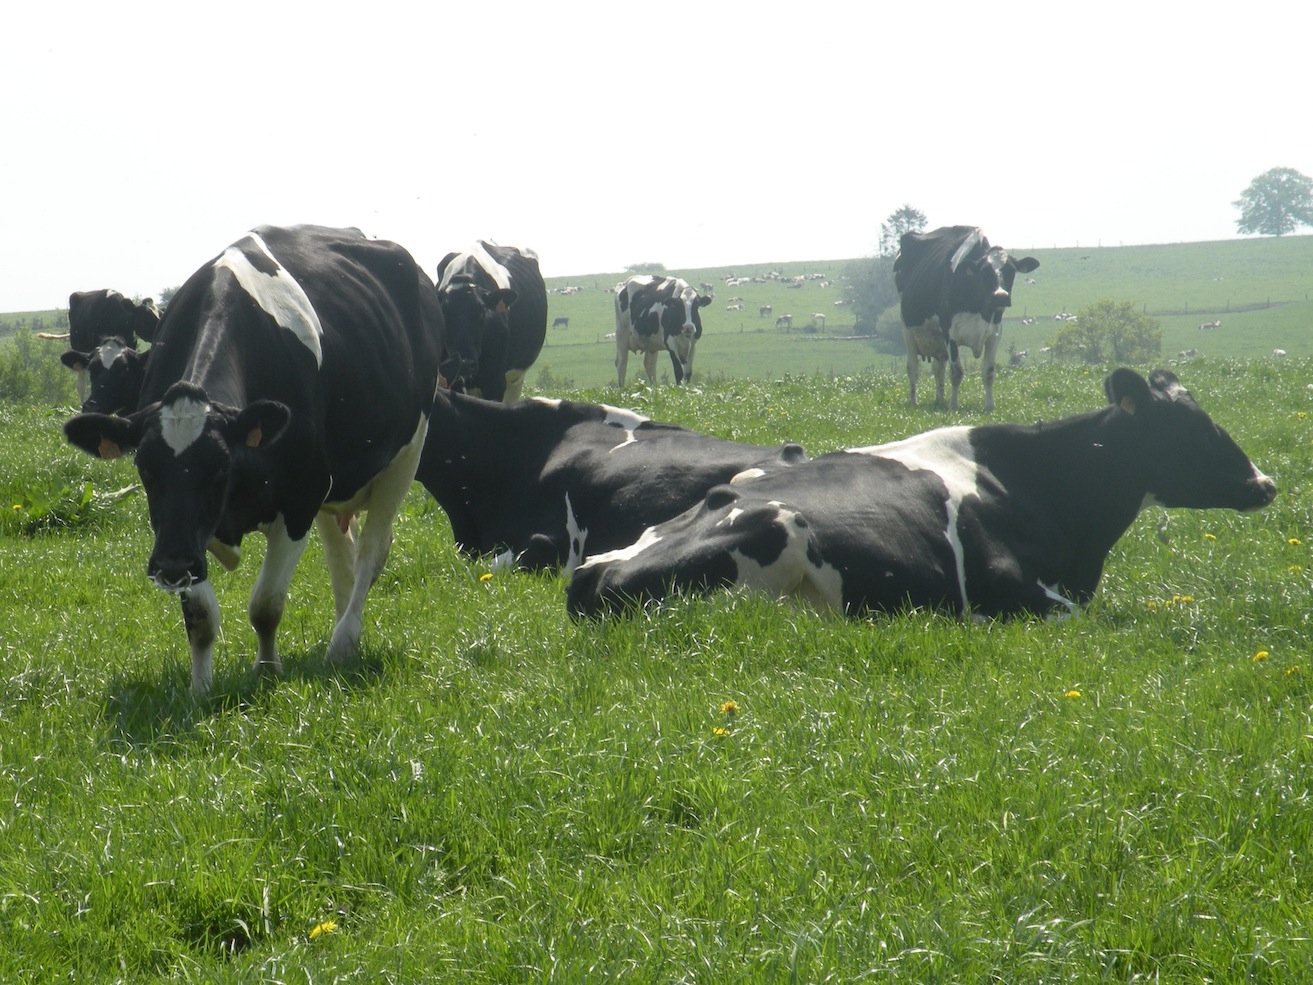 Vidéoconférence pour les éleveurs laitiers : quelles sont les perception et attentes des consommateurs vis-à-vis du secteur laitier, notamment au niveau de la durabilité?